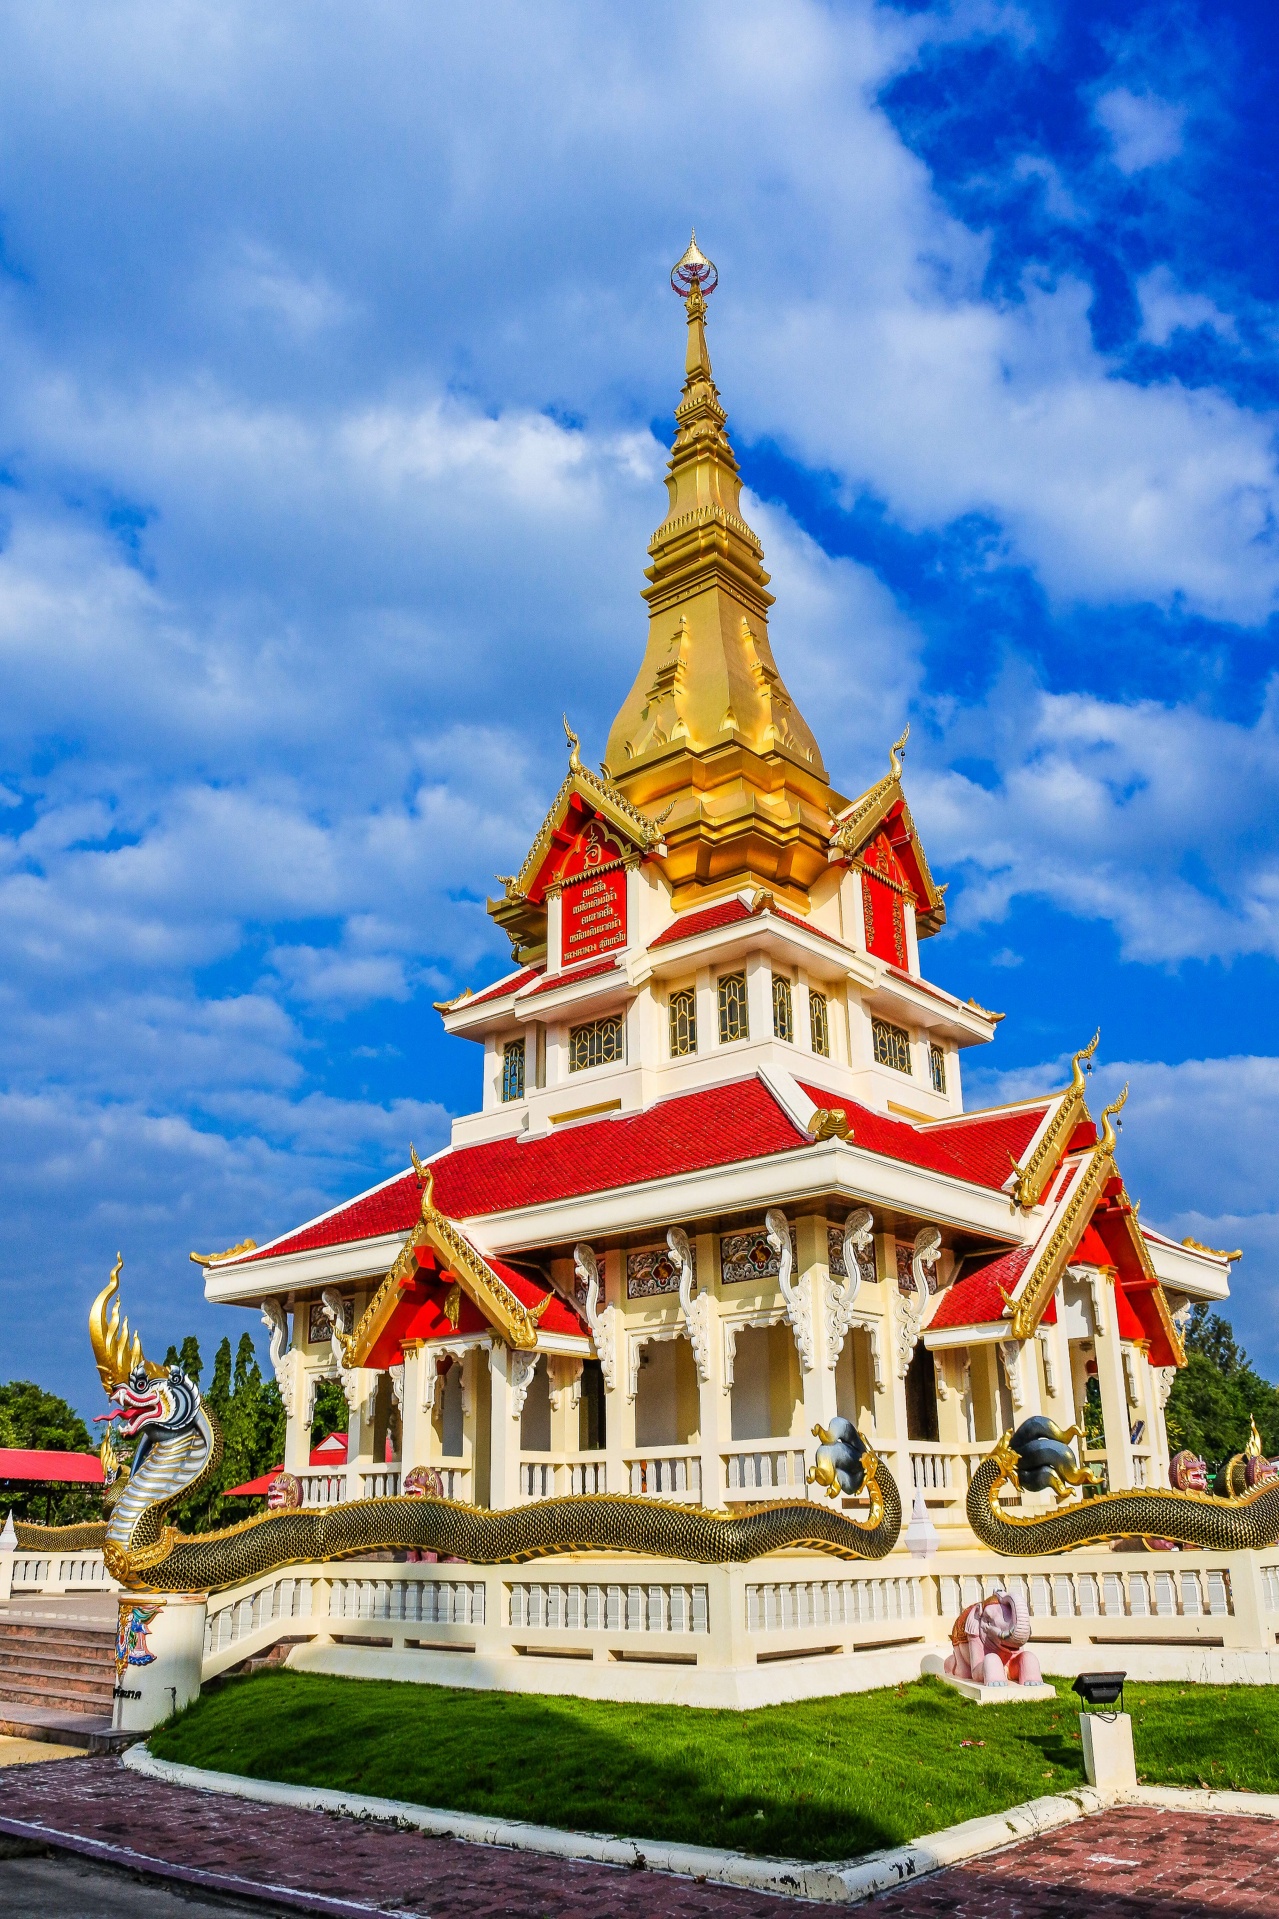 Wat Samakkhi Tham , Yasothon, Thailand